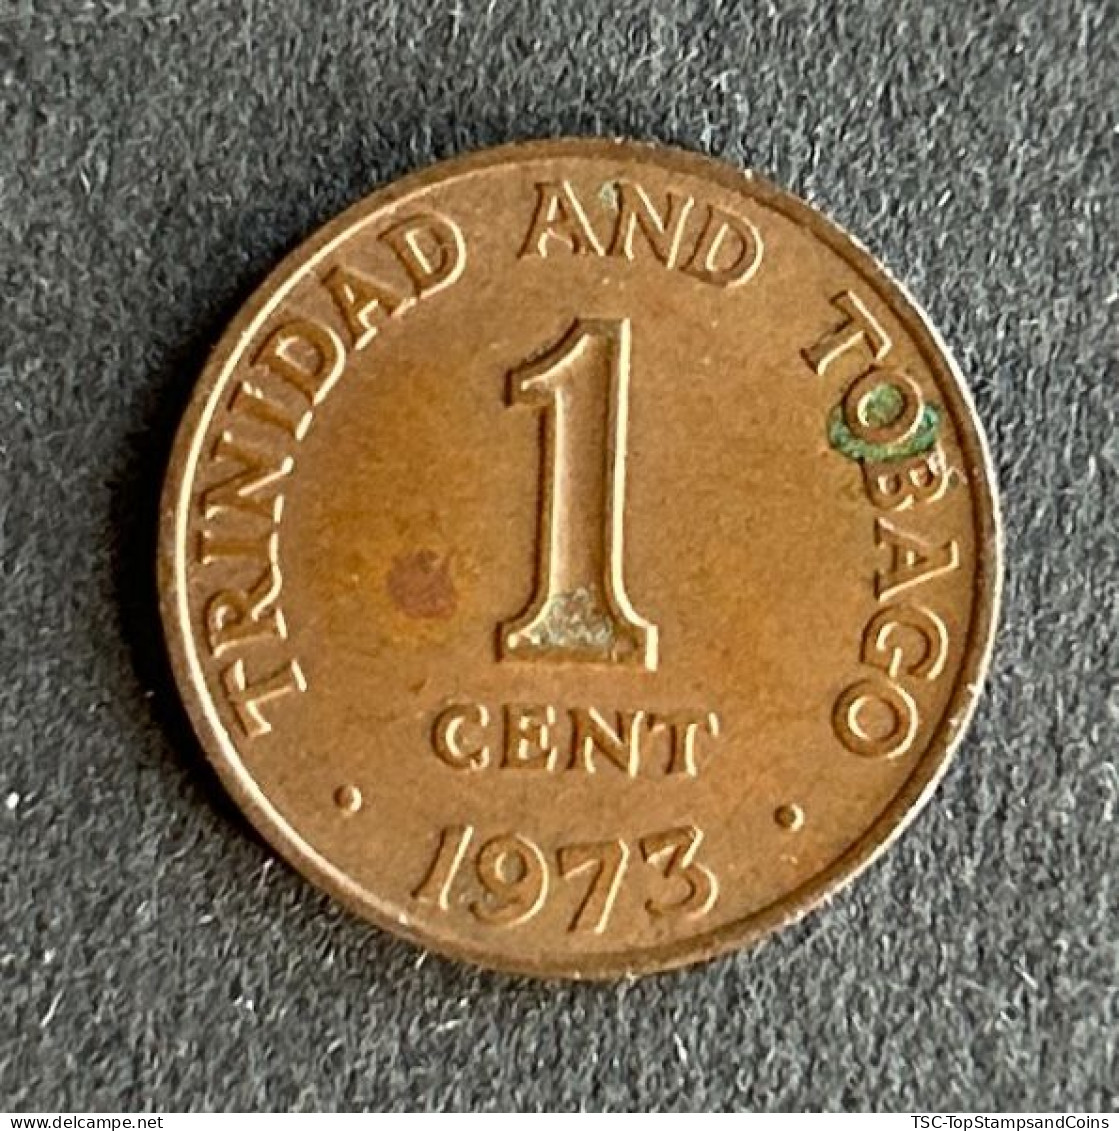 $$T&B400 - Elizabeth II - Coat Of Arms - 1 Cent Coin - Trinidad & Tobago - 1973 - Trinité & Tobago